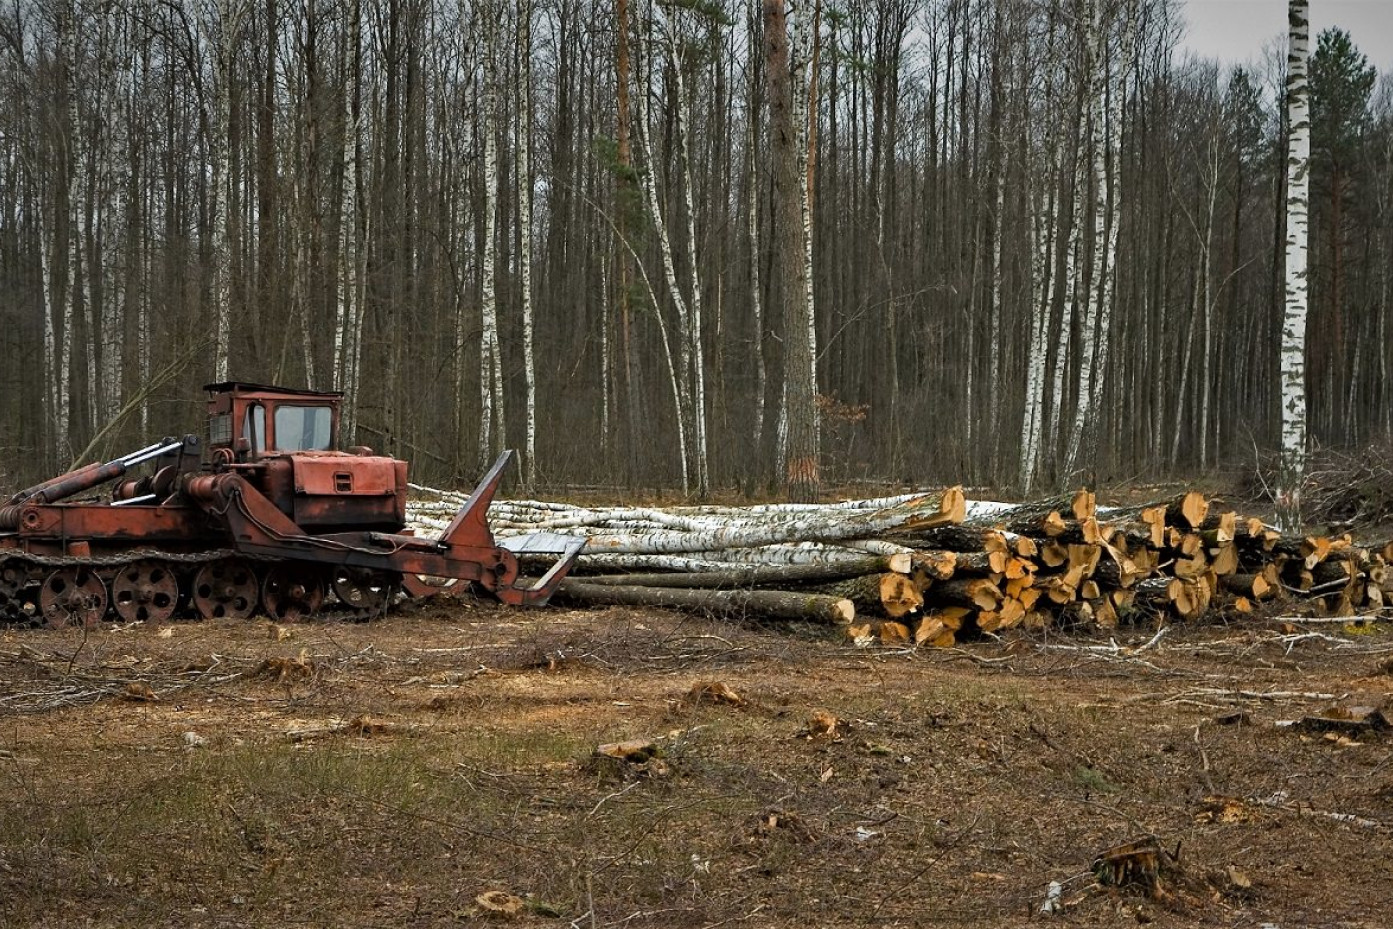 En maskine er ved at samle fældede træer